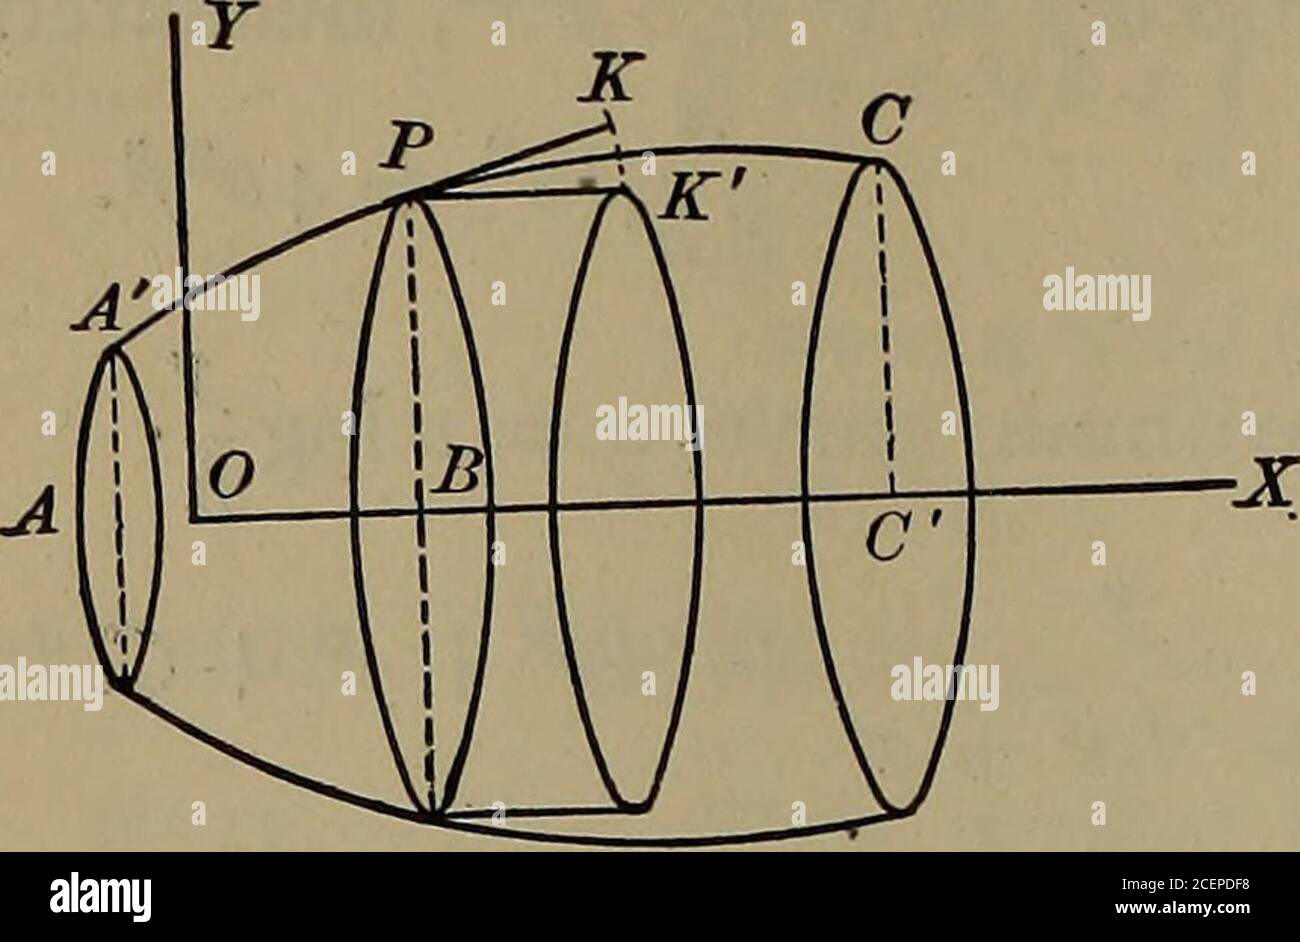 Calcolo differenziale e integrale. -erera la circonferenza di un cerchio, E  ogni ordinata del thecurve, come PP( = y), genera l'area di un cerchio,  possiamo co-ricevere la superficie e il volume